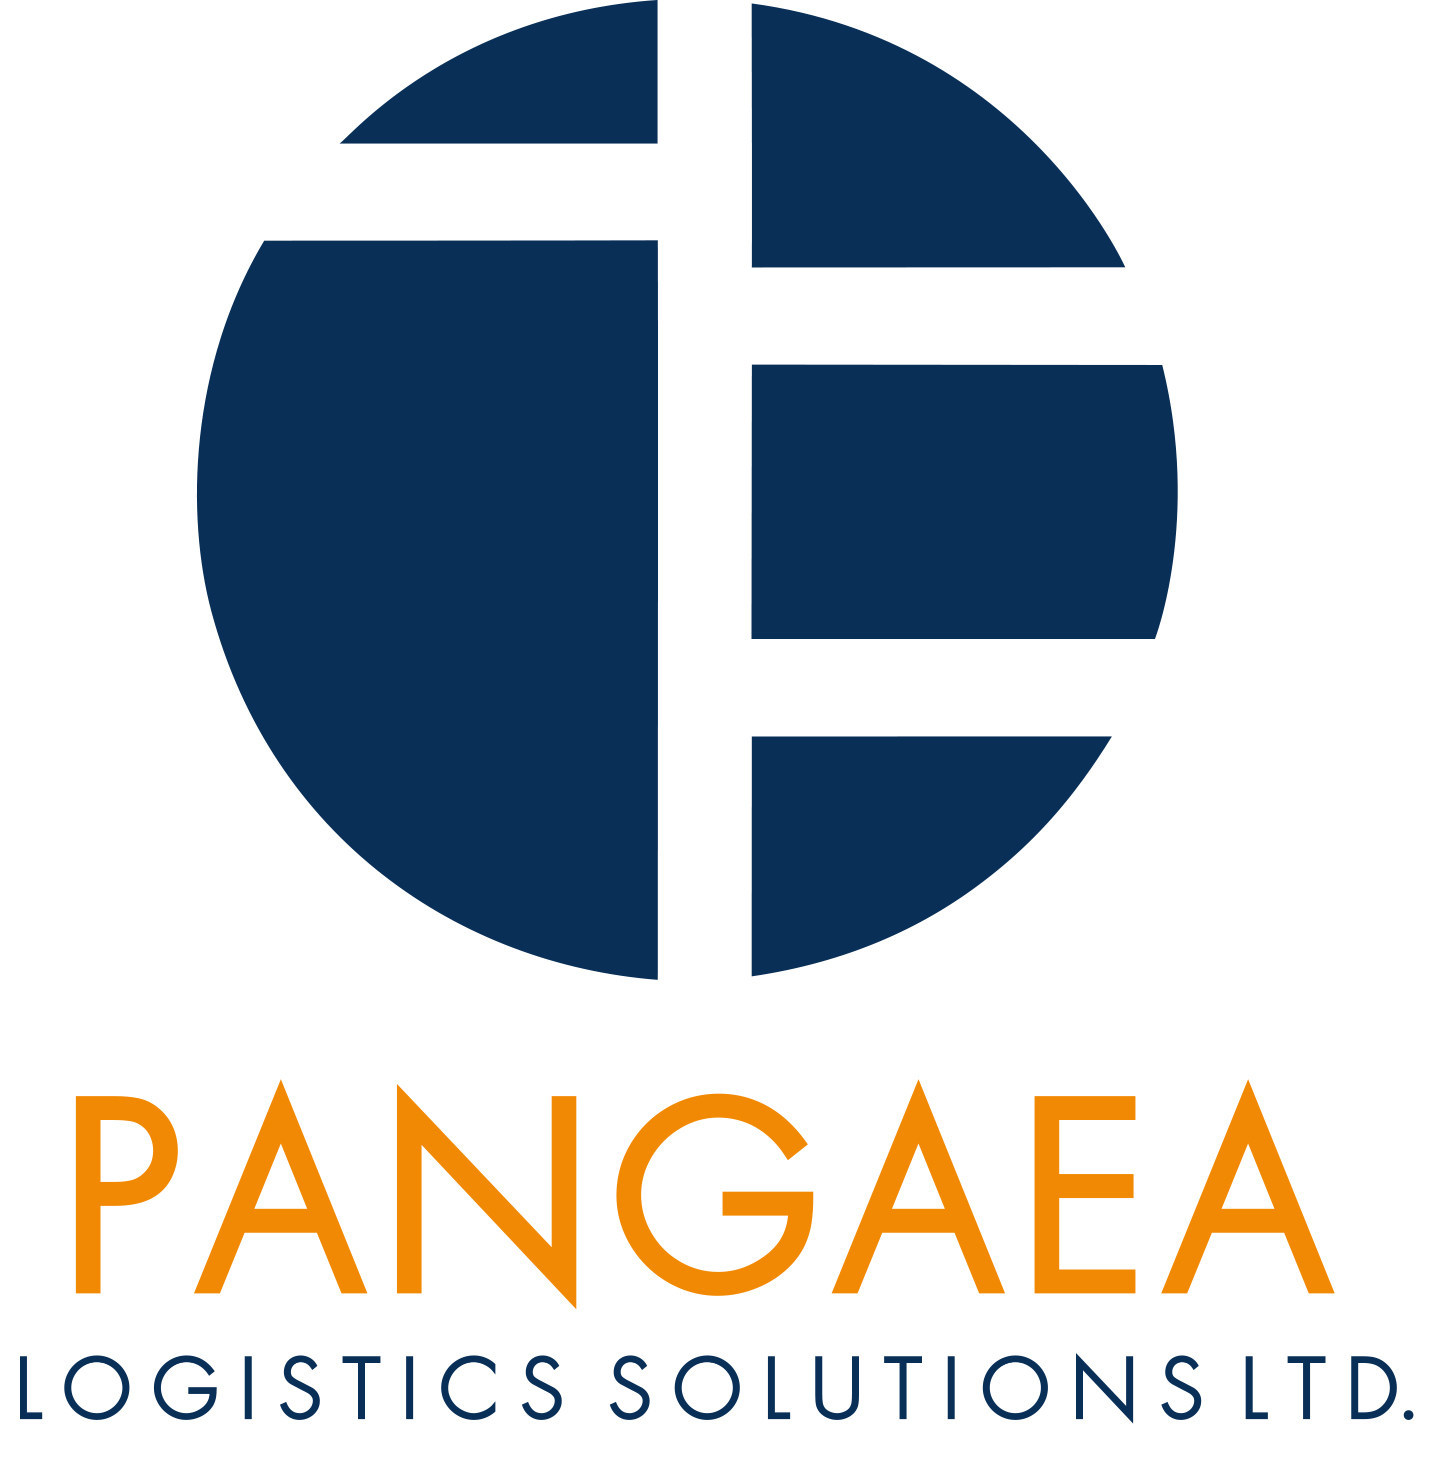 Pangaea Logistics Solutions Announces Quarterly Cash Dividend